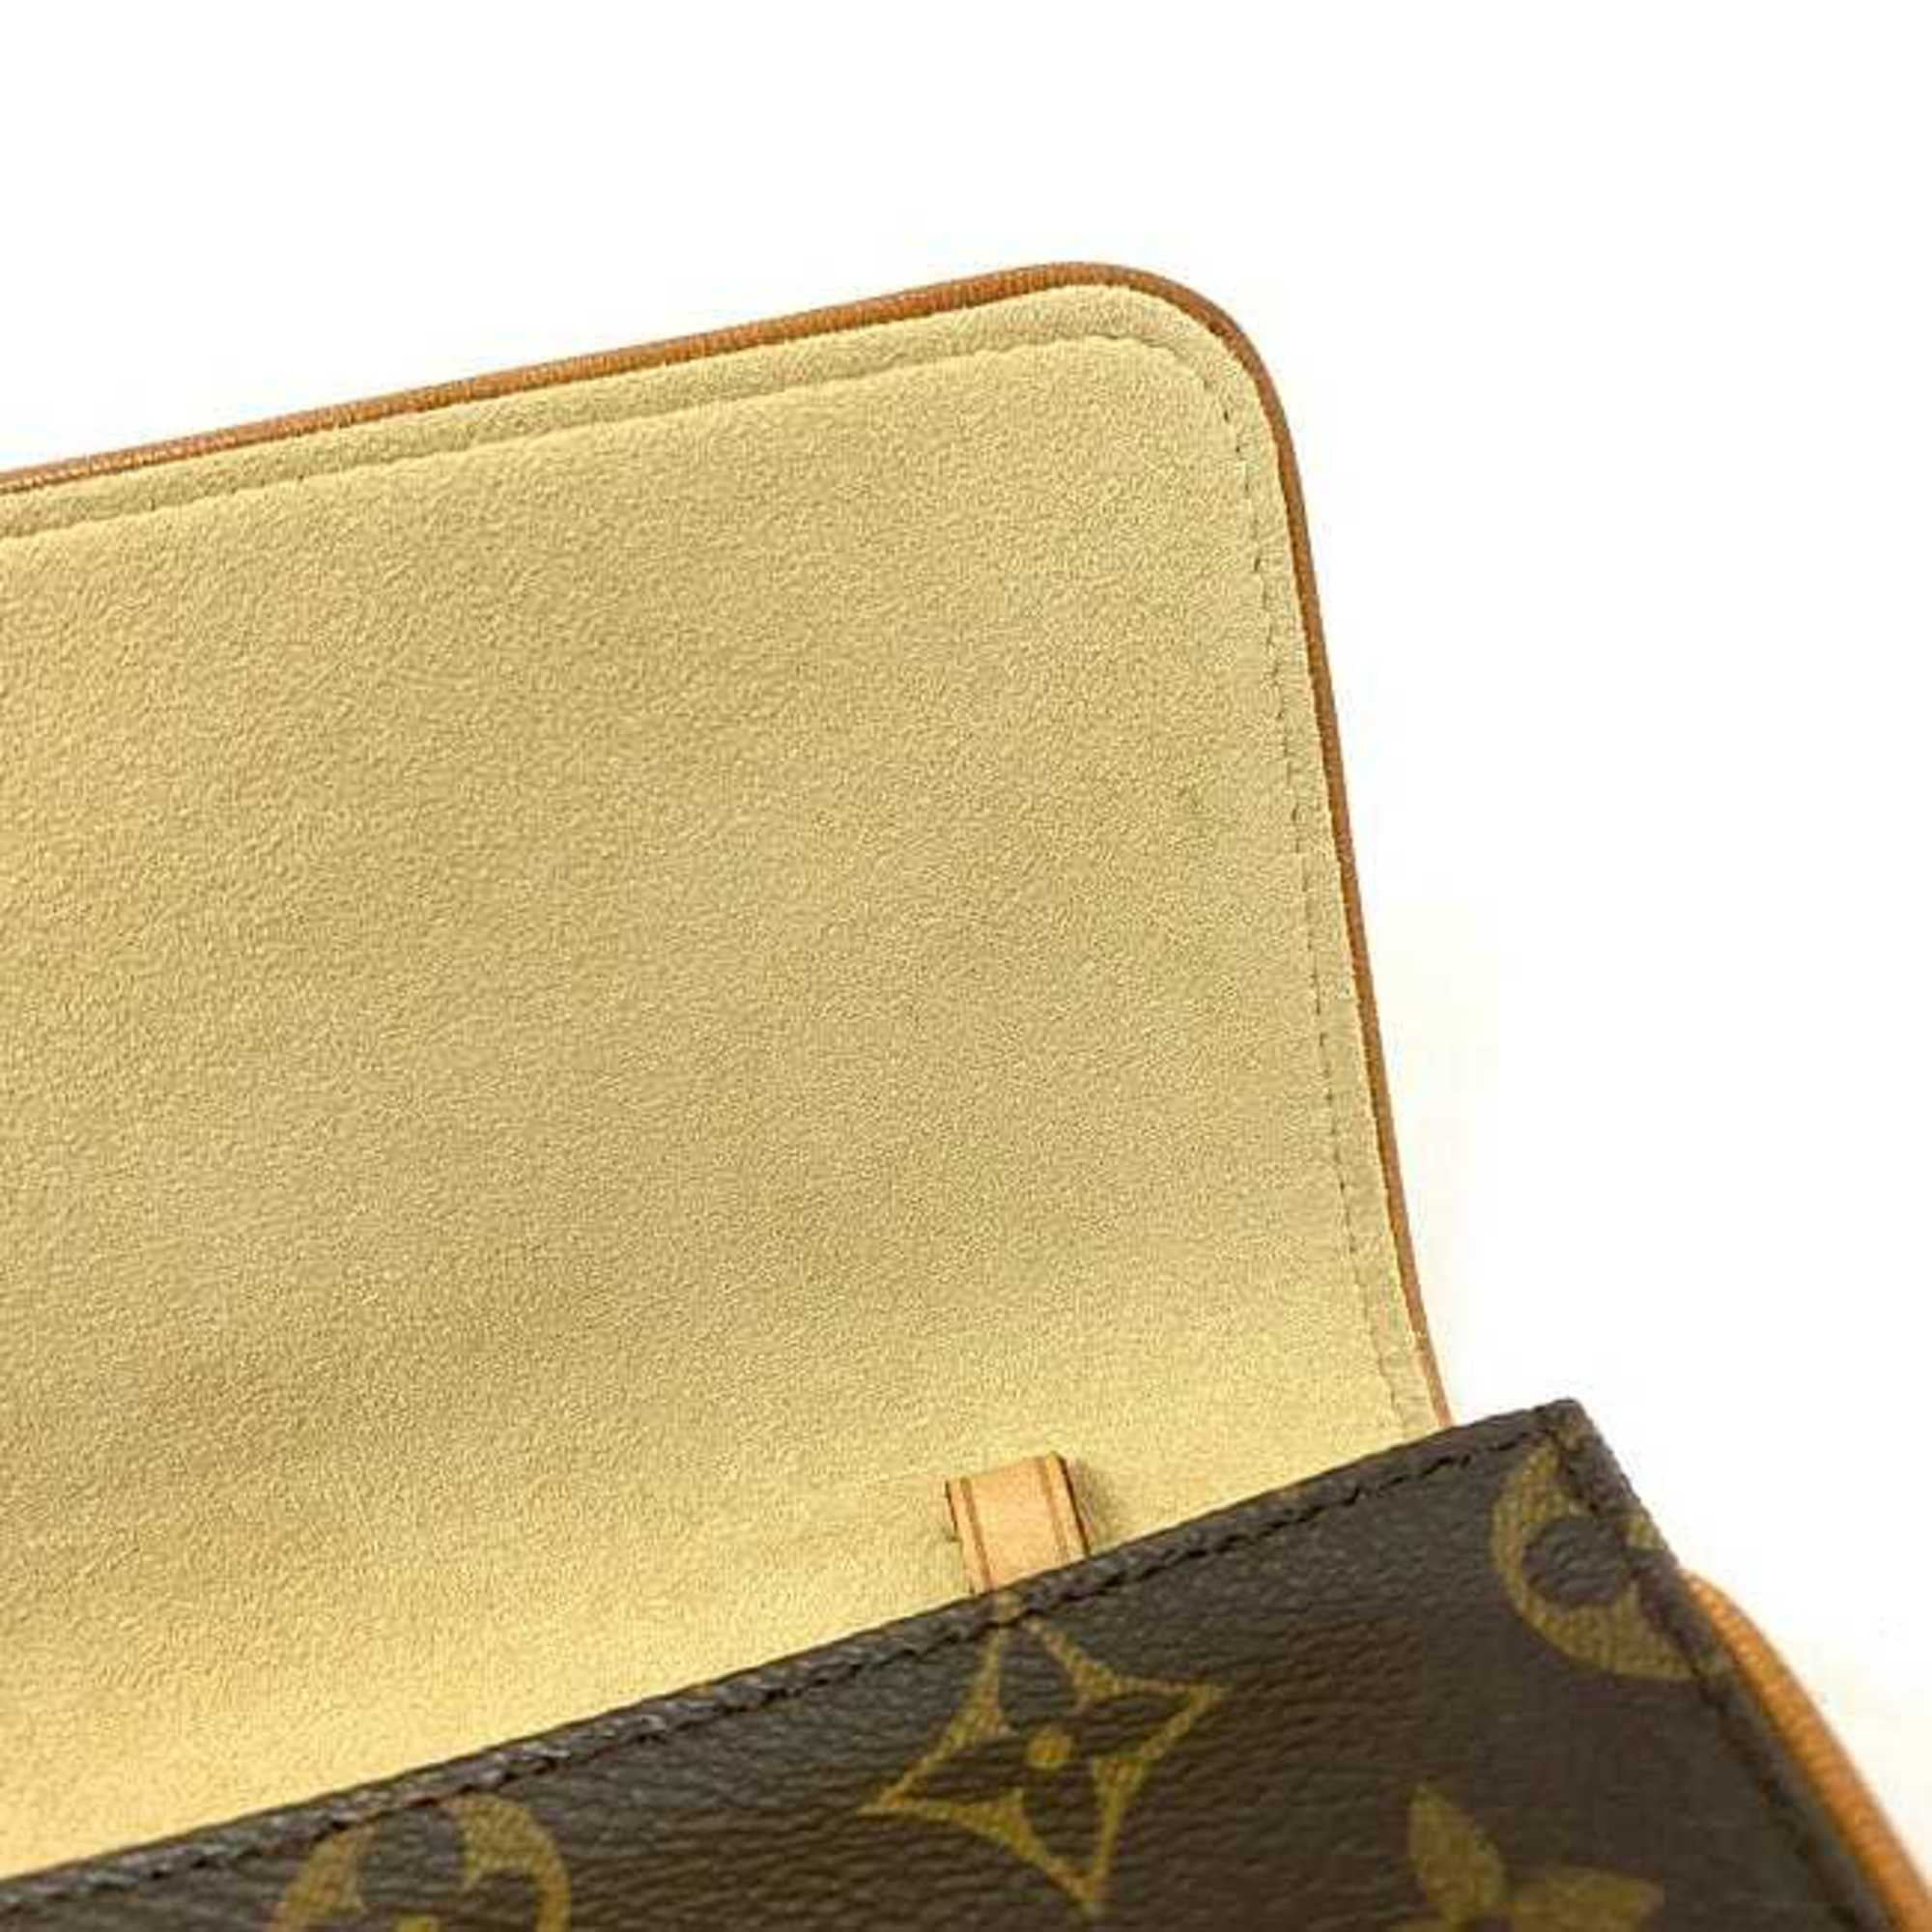 LOUIS VUITTON POCHETTE PLIANTE Vintage Clutch Bag Purse Monogram M51805  Brown